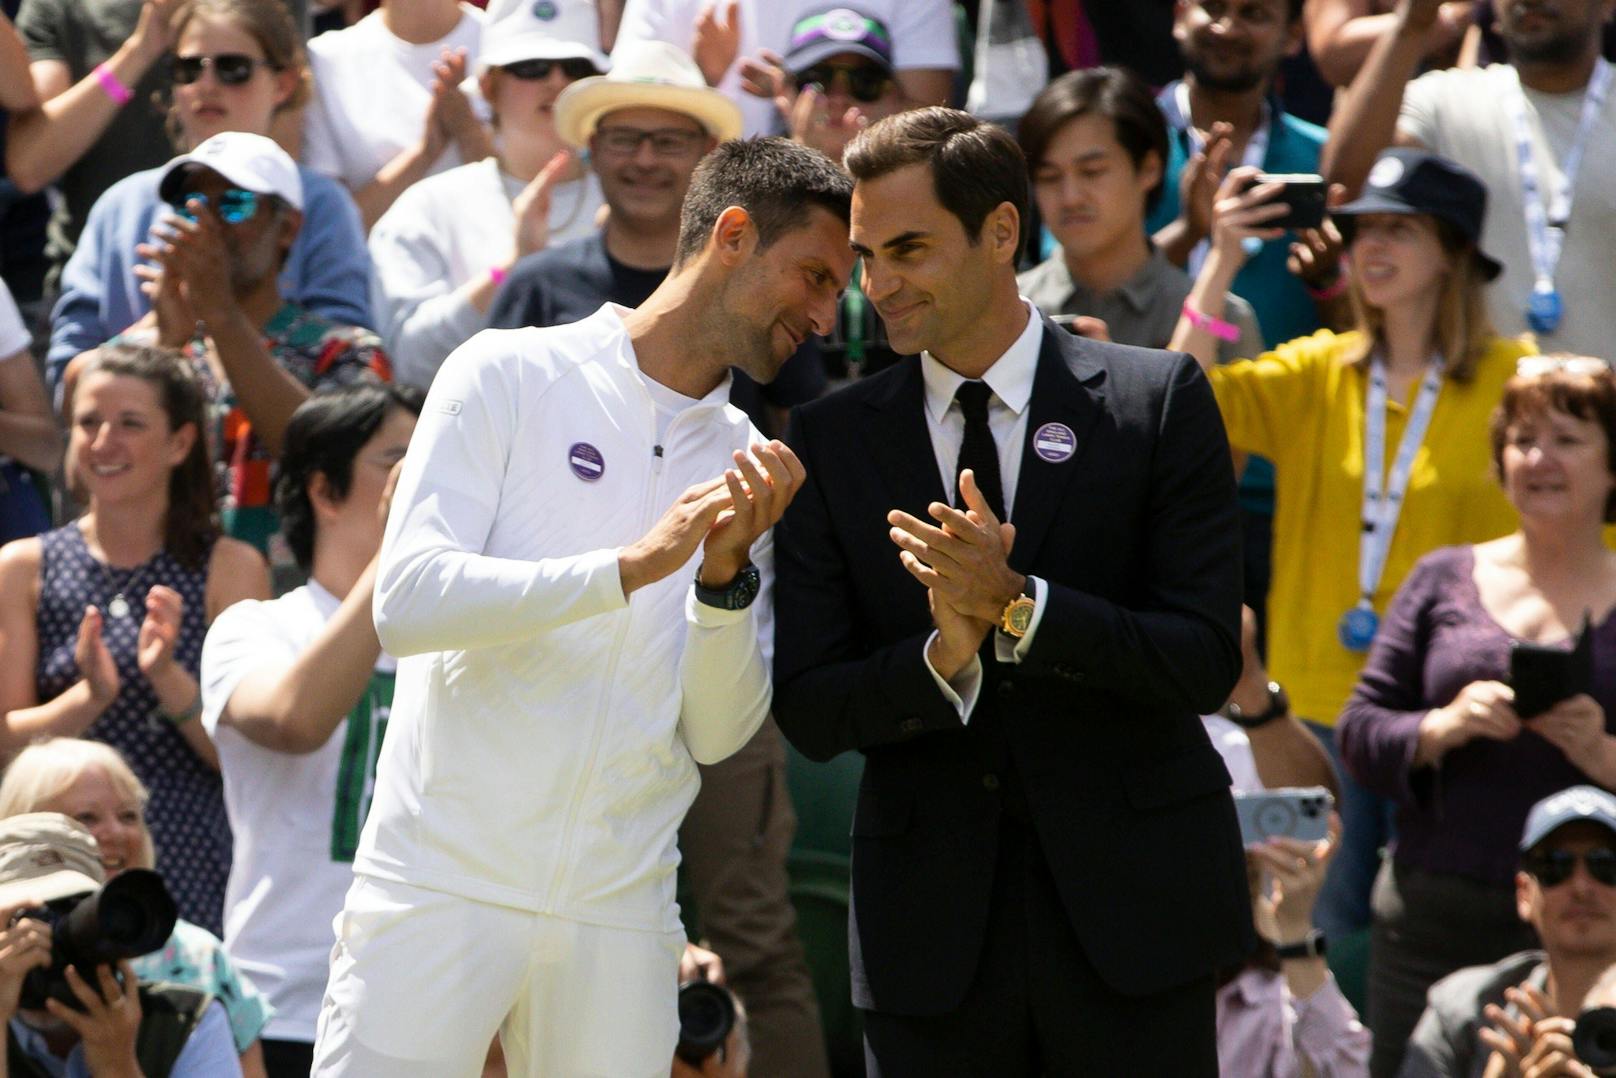 Djokovic zum Federer-Abschied: "Ehre dich zu kennen"